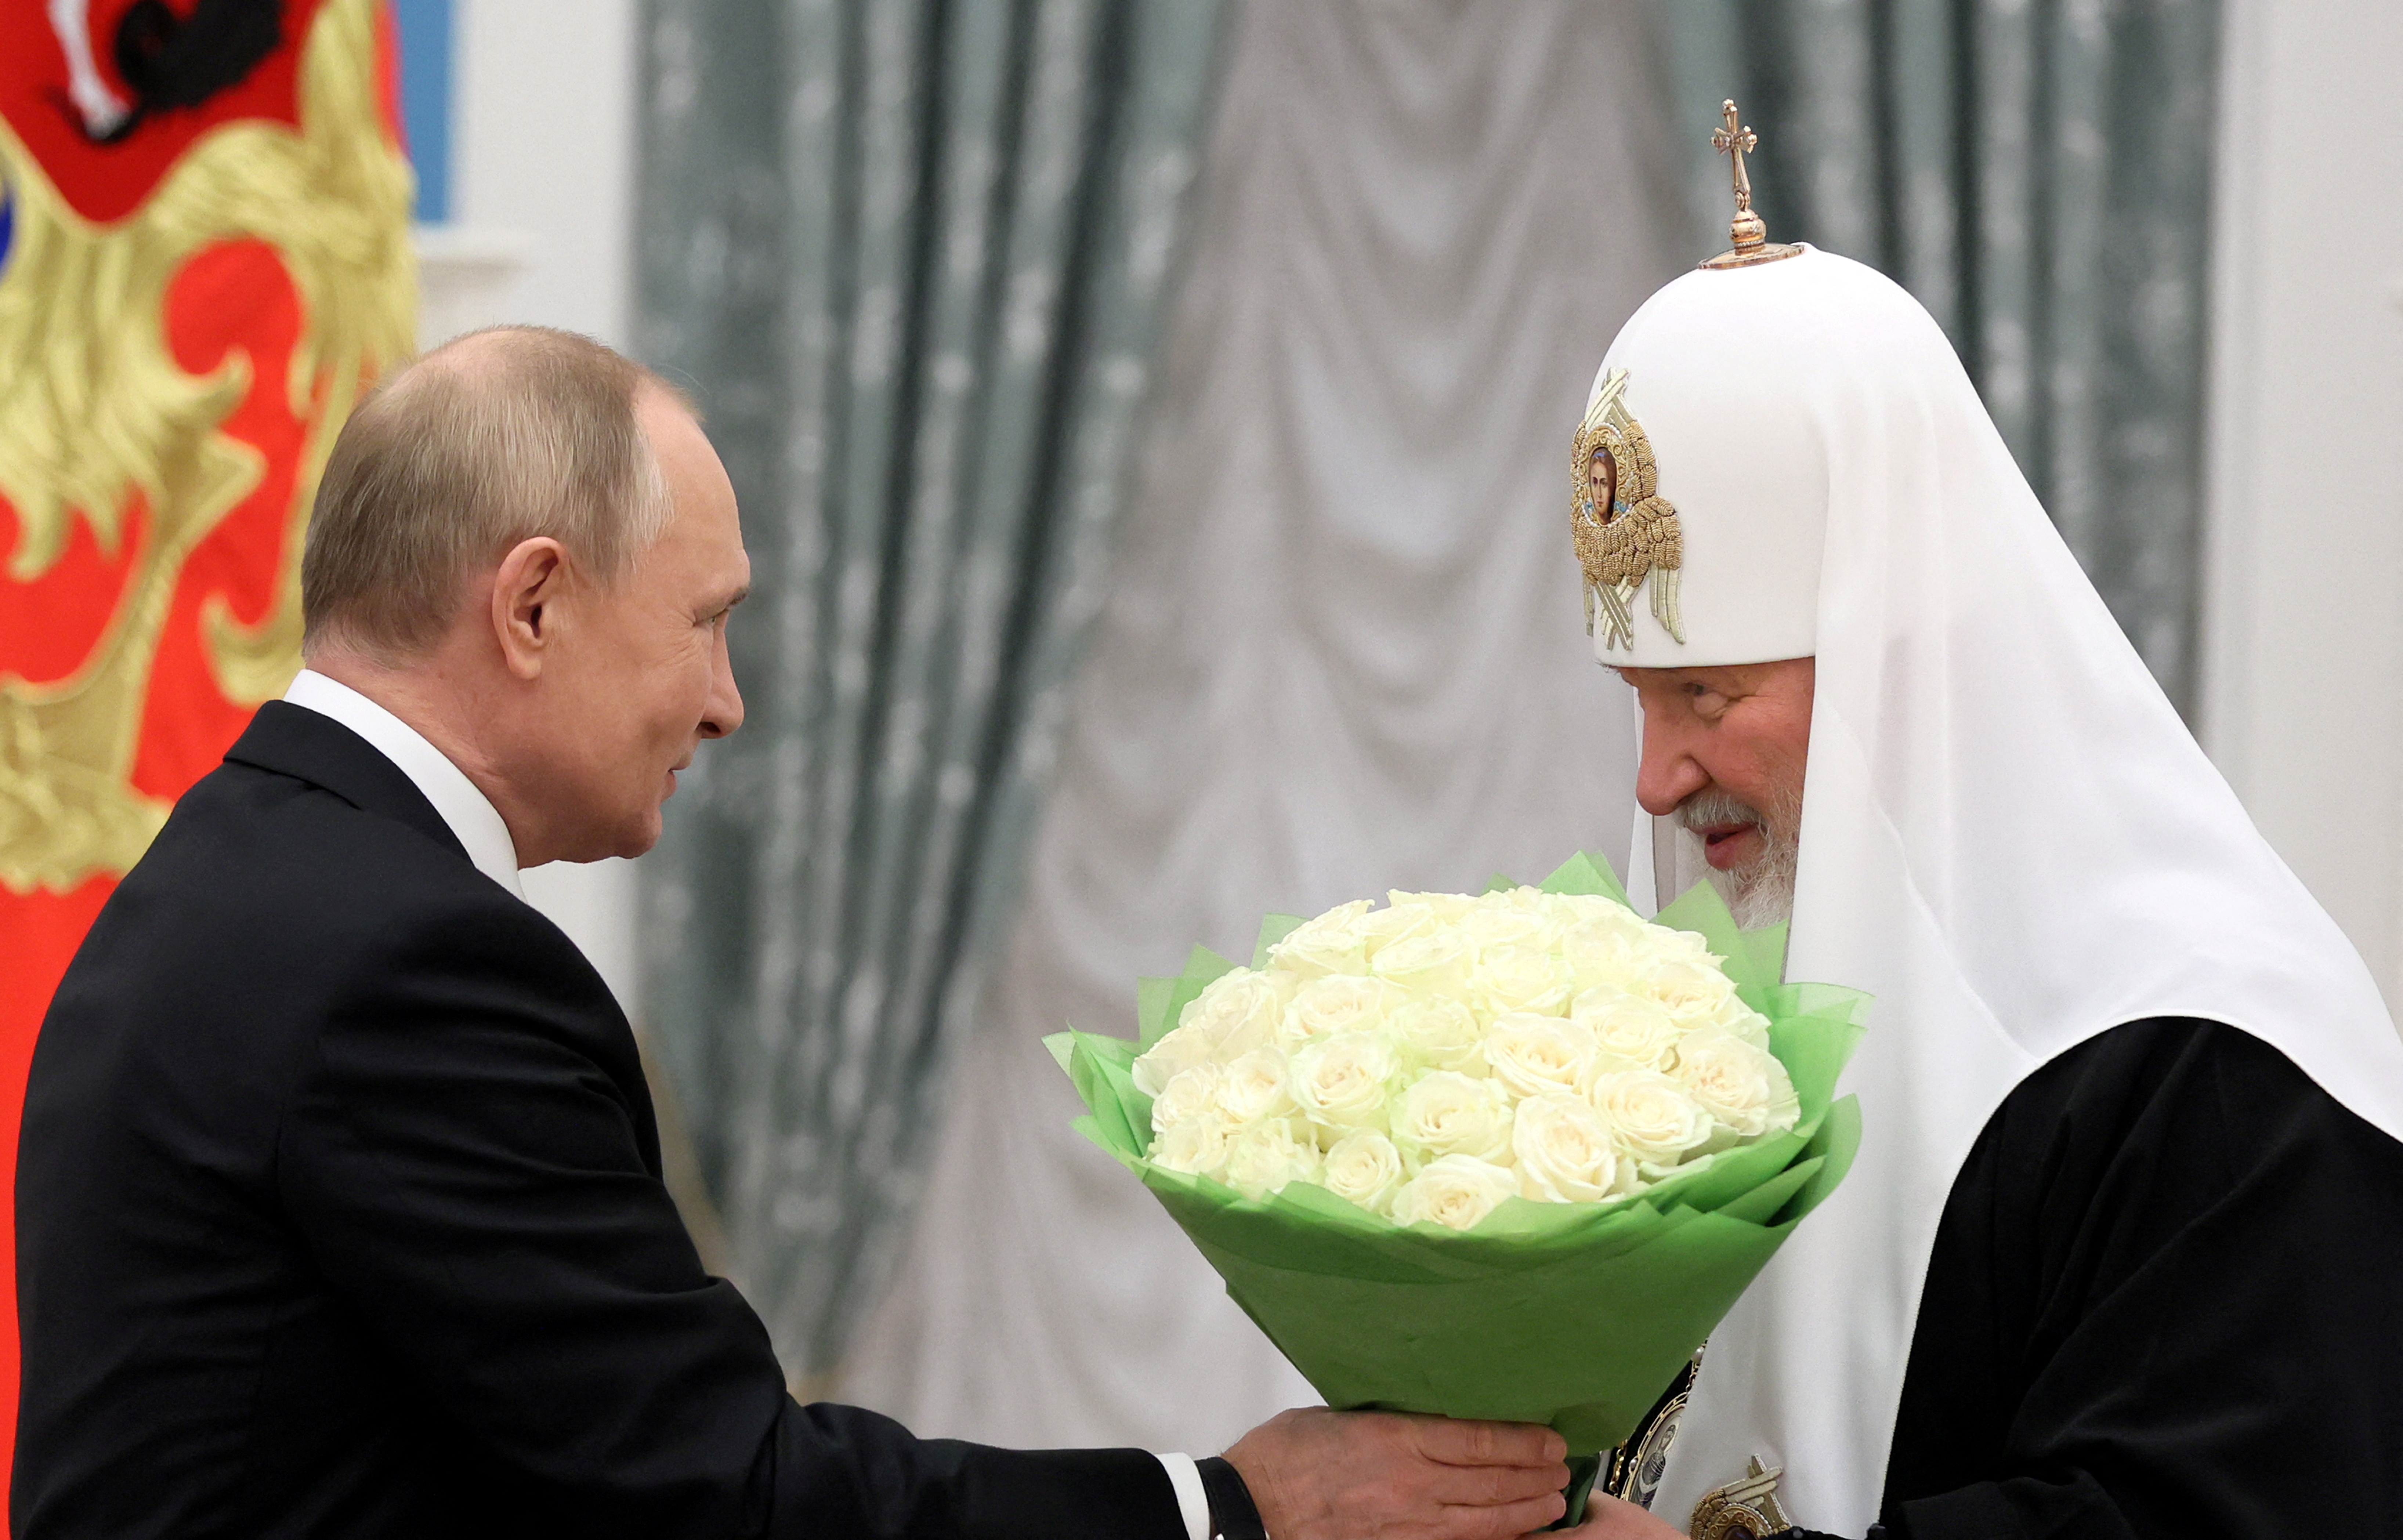 El presidente ruso, Vladímir Putin, presenta flores durante una ceremonia de entrega de la Orden de San Andrés Apóstol el Primer Llamado al patriarca Kirill de Moscú y toda Rusia en Moscú, Rusia, 20 de noviembre de 2021. (Sputnik/Mikhail Metzel/REUTERS)